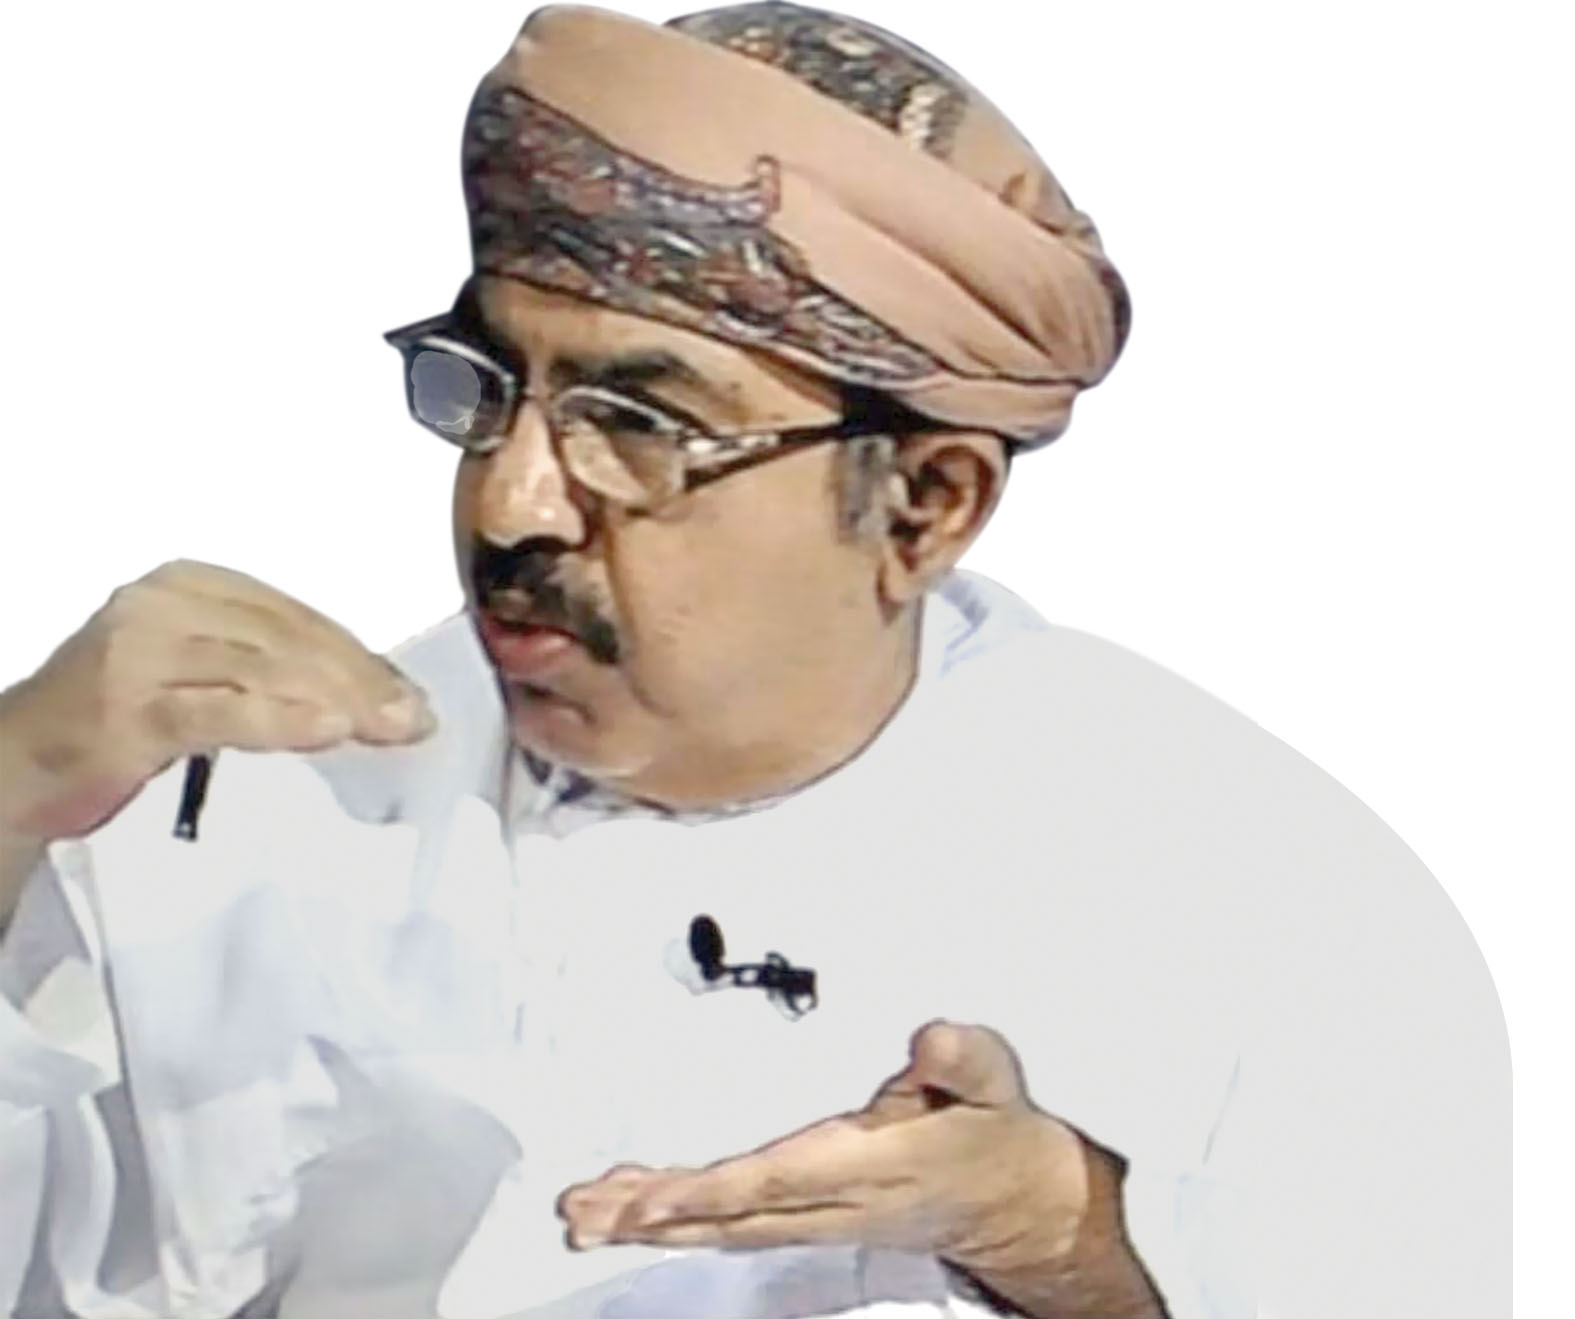 التحديات التي تواجه عمان (١٣)
"لماذا أخفقنا في جذب الاستثمار الاجنبي؟ "